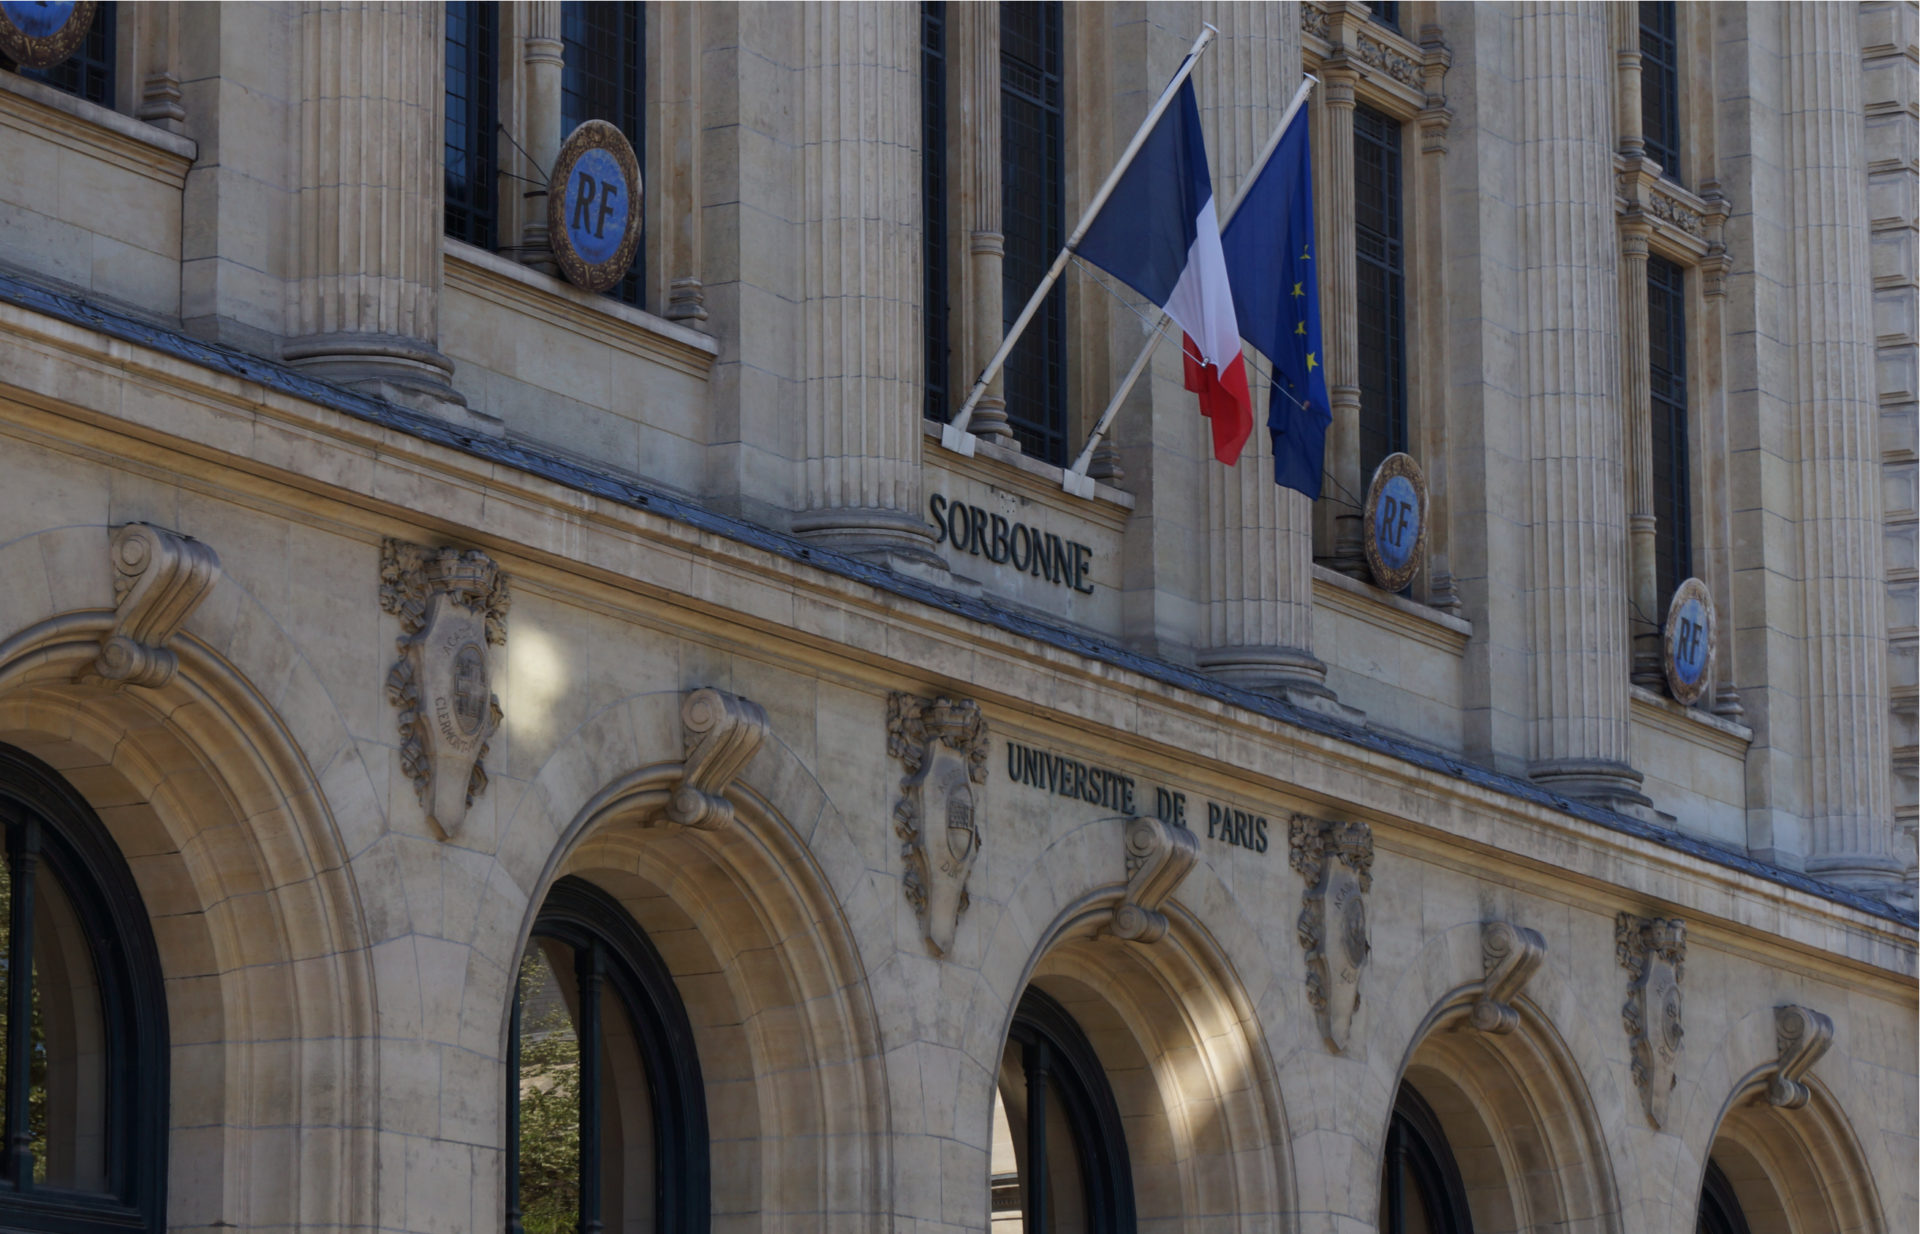 Visit The Famous left bank - St Germain Sorbonne Delphine